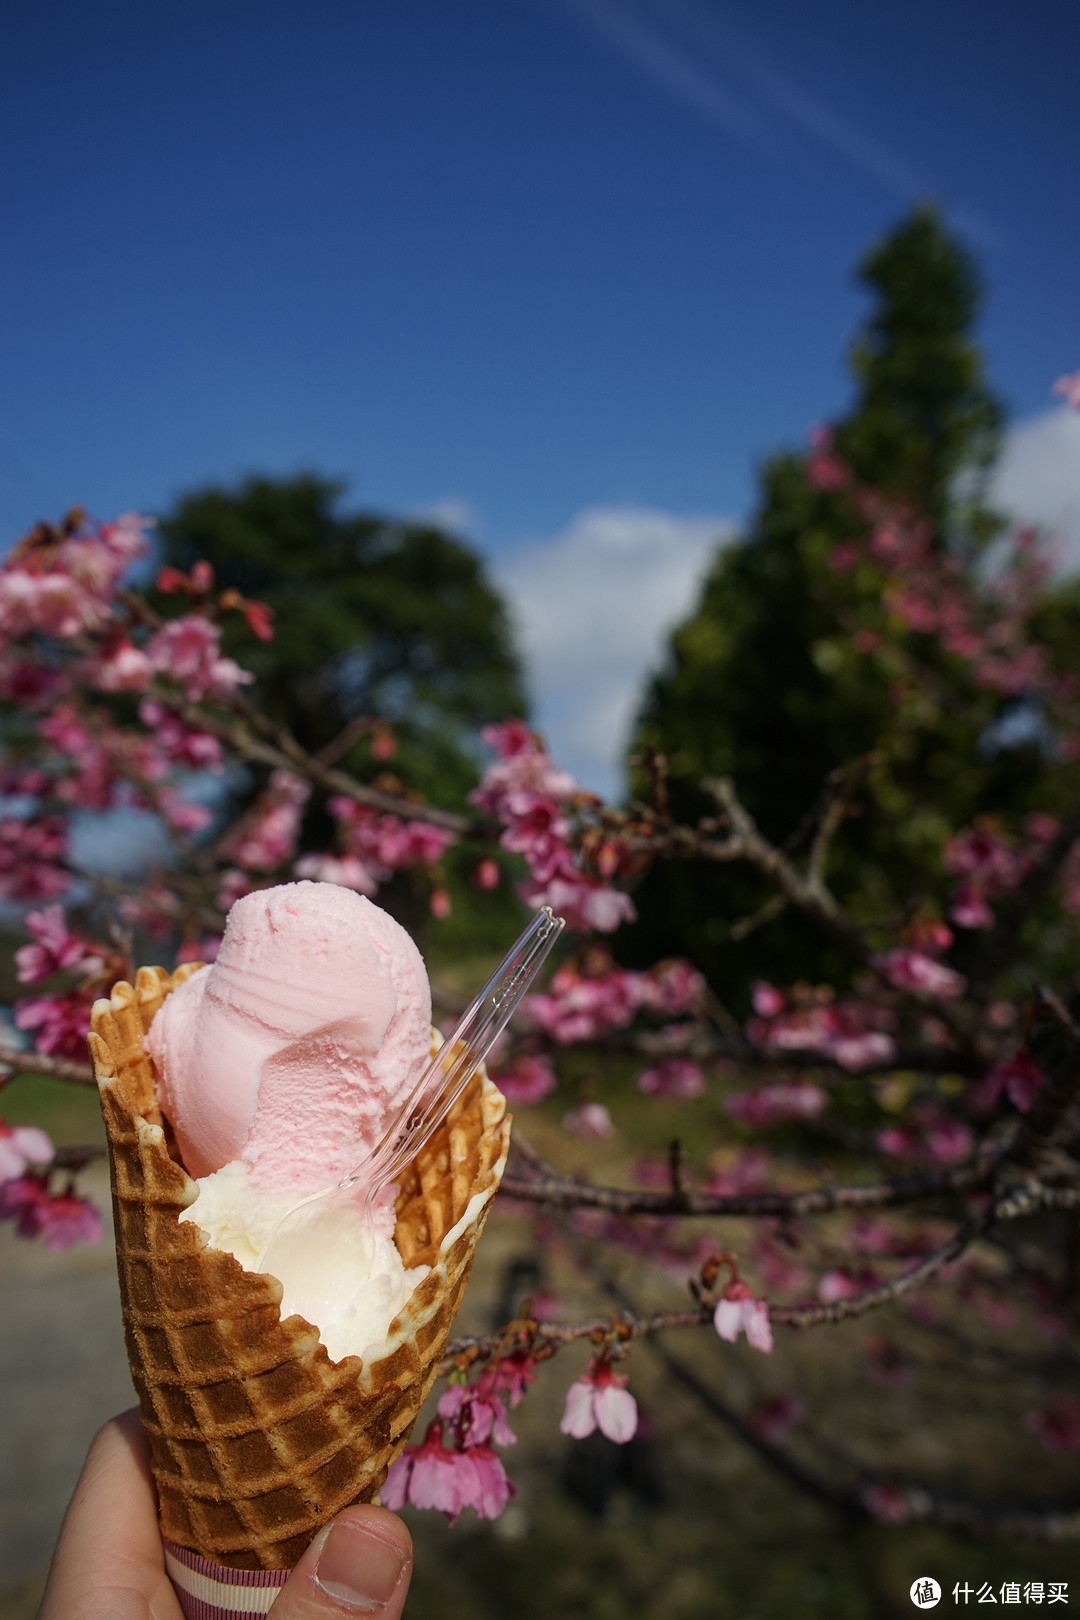 冲绳的樱花是最早开的，和本州的樱花品种不太一样，偏大个，冰淇淋不错，奶味足。